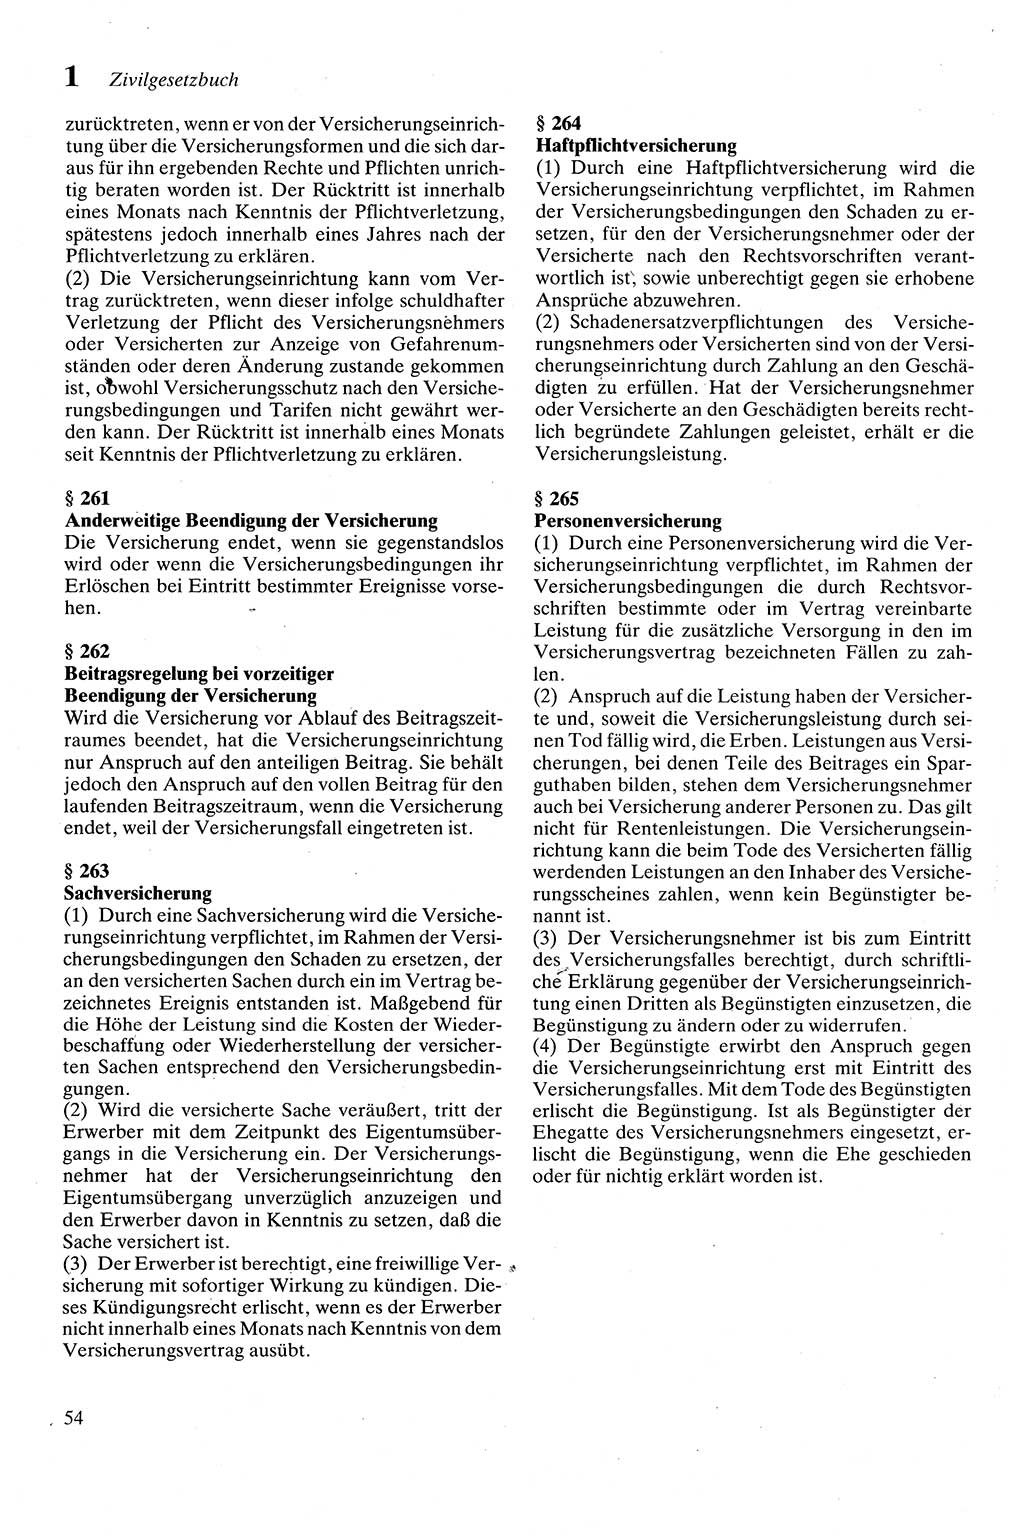 Zivilgesetzbuch (ZVG) sowie angrenzende Gesetze und Bestimmungen [Deutsche Demokratische Republik (DDR)] 1975, Seite 54 (ZGB Ges. Best. DDR 1975, S. 54)